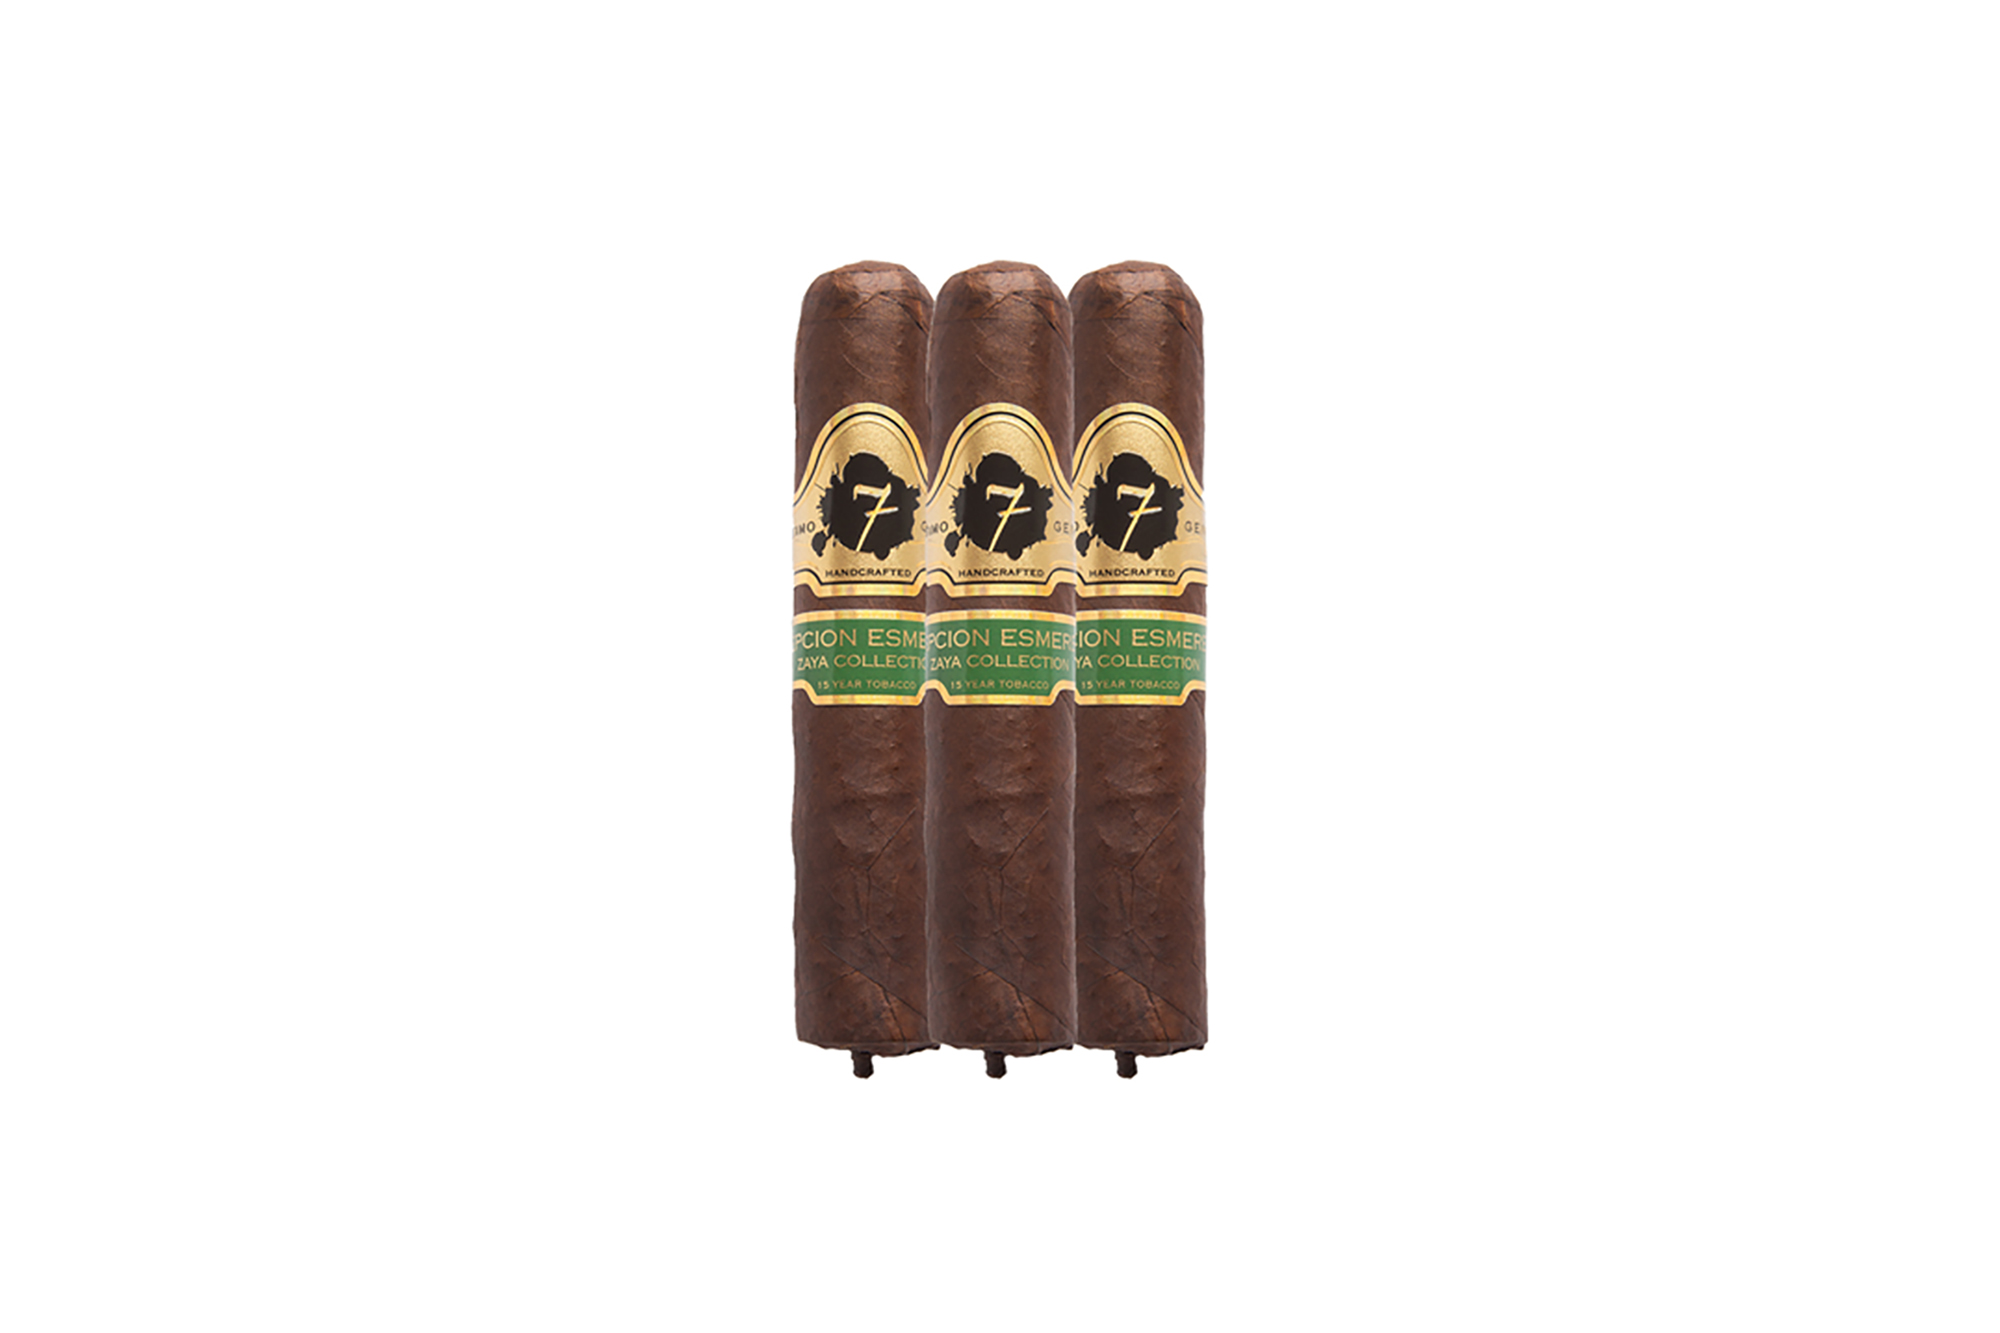 Excepcion Esmeralda Cigars